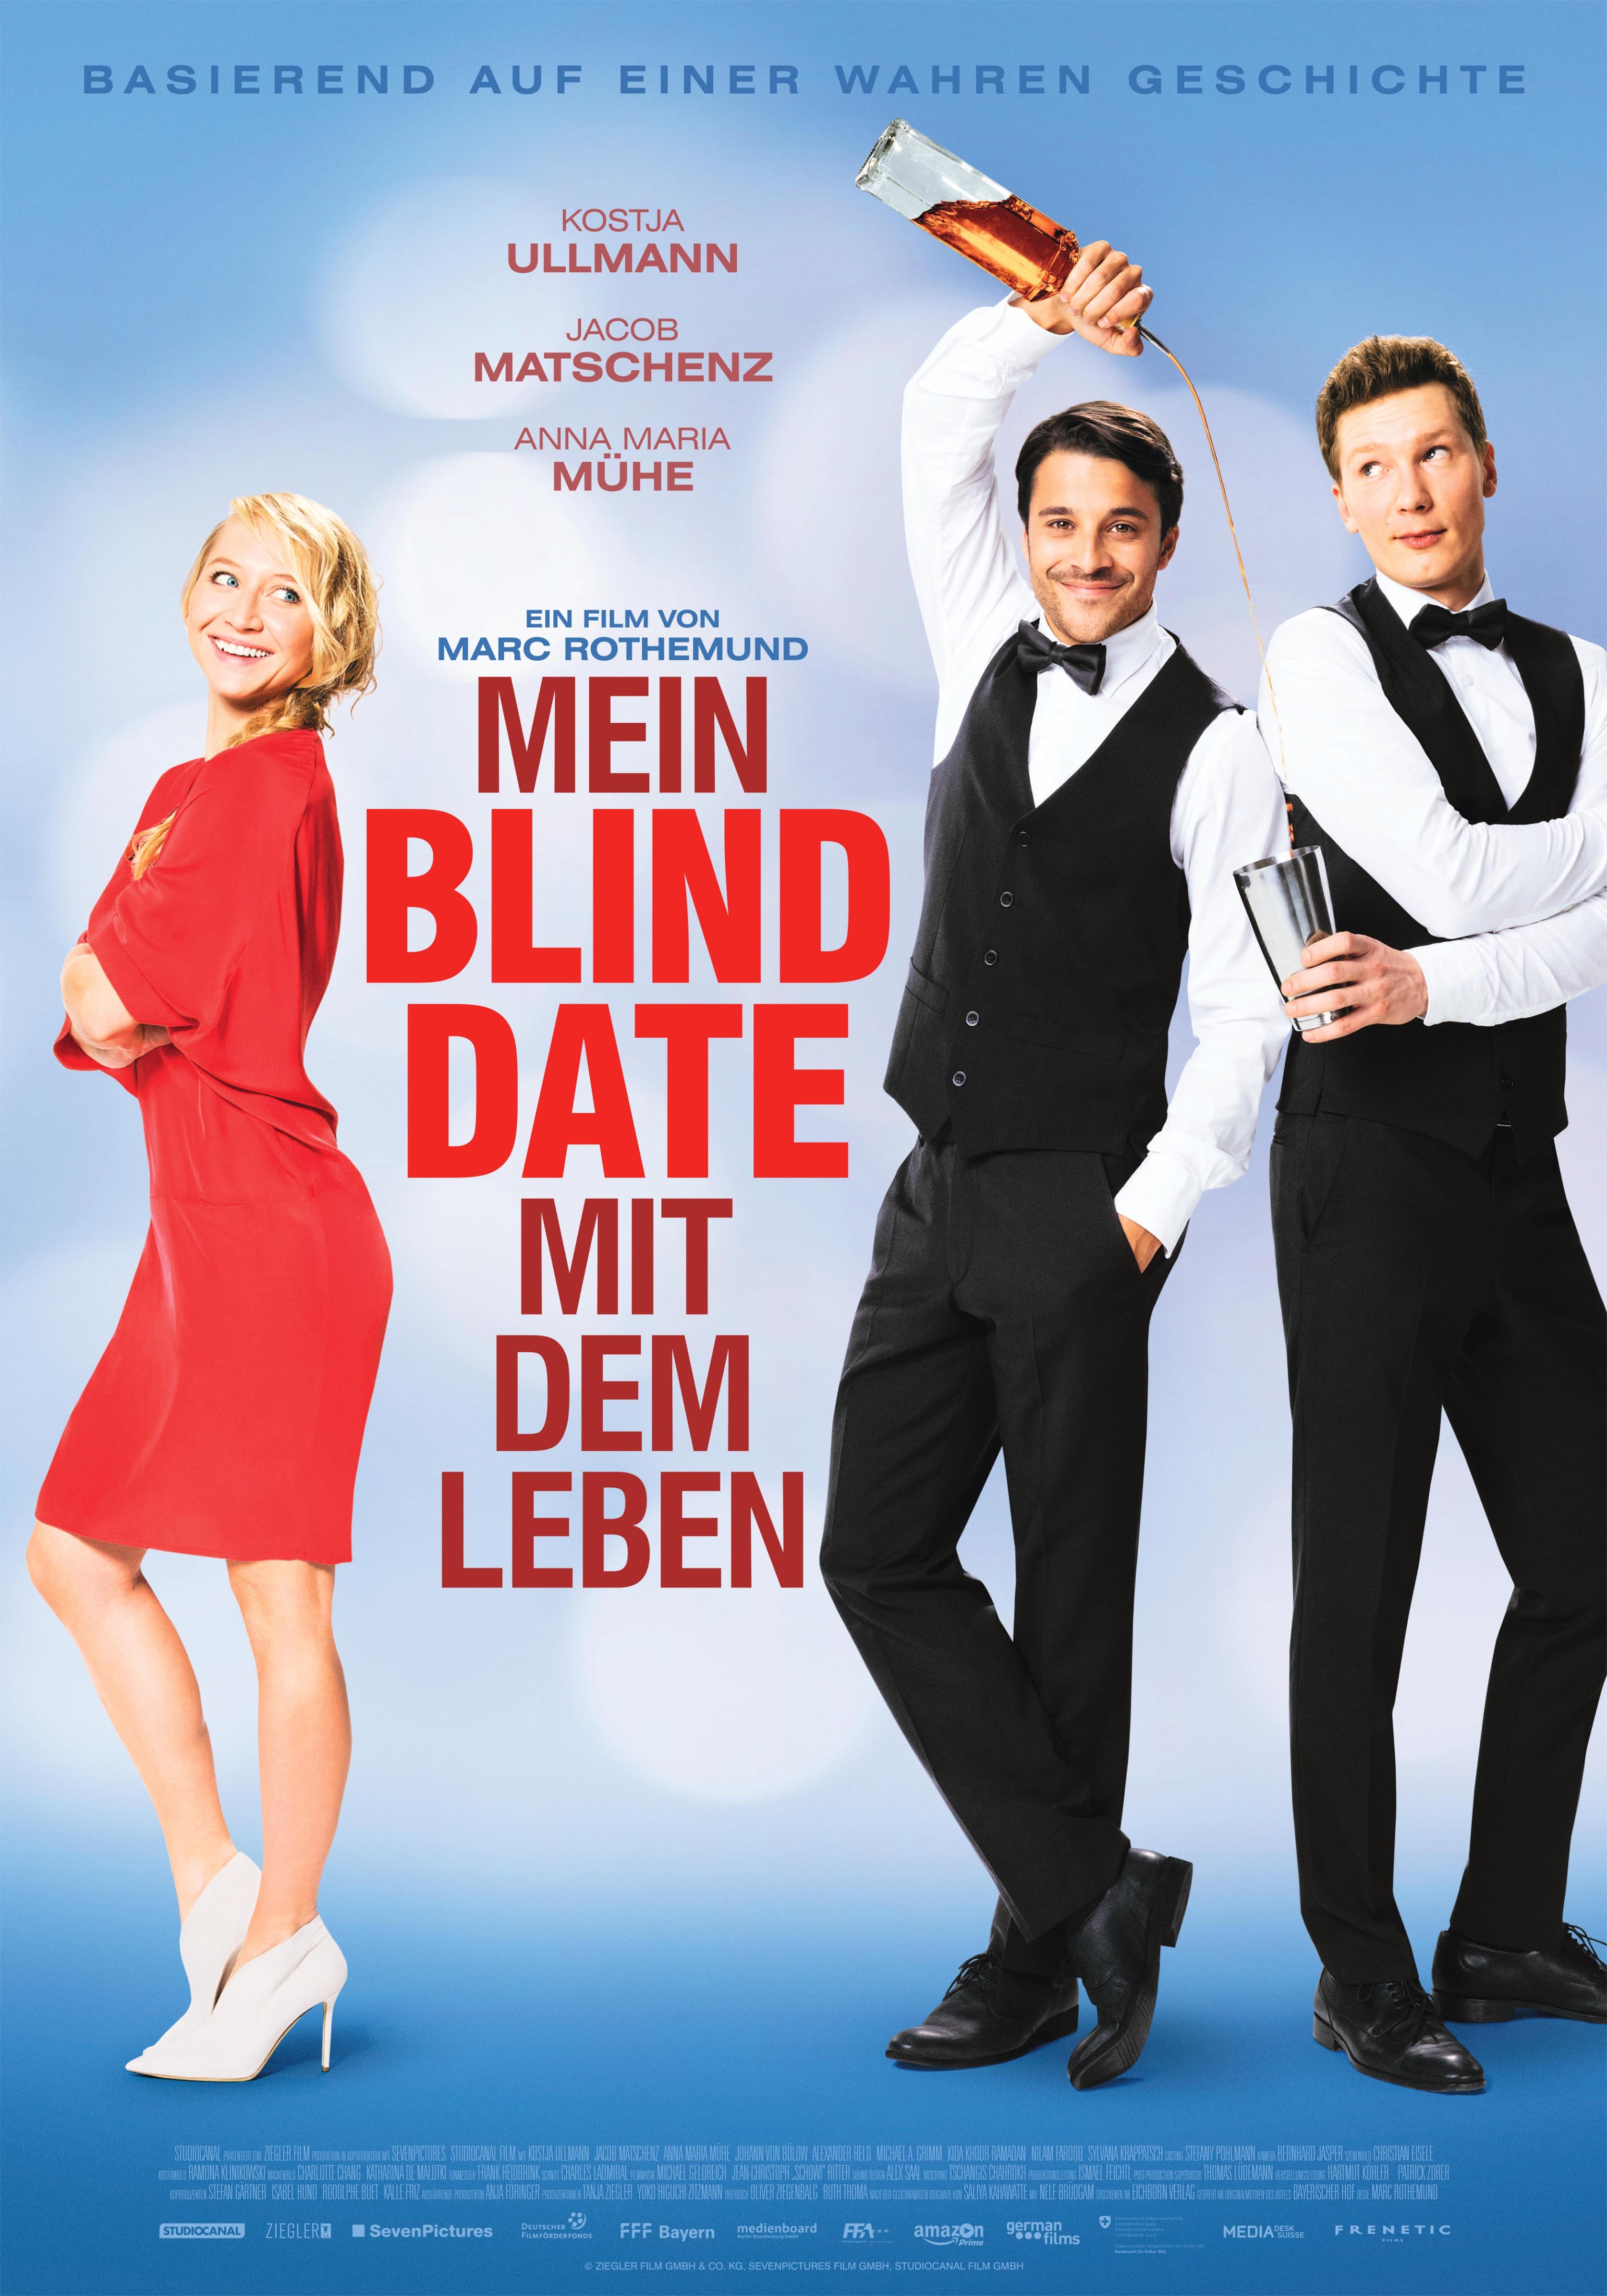 Не смотря не на что 2017. Не/смотря ни на что Mein Blind Date mit dem Leben, 2017.